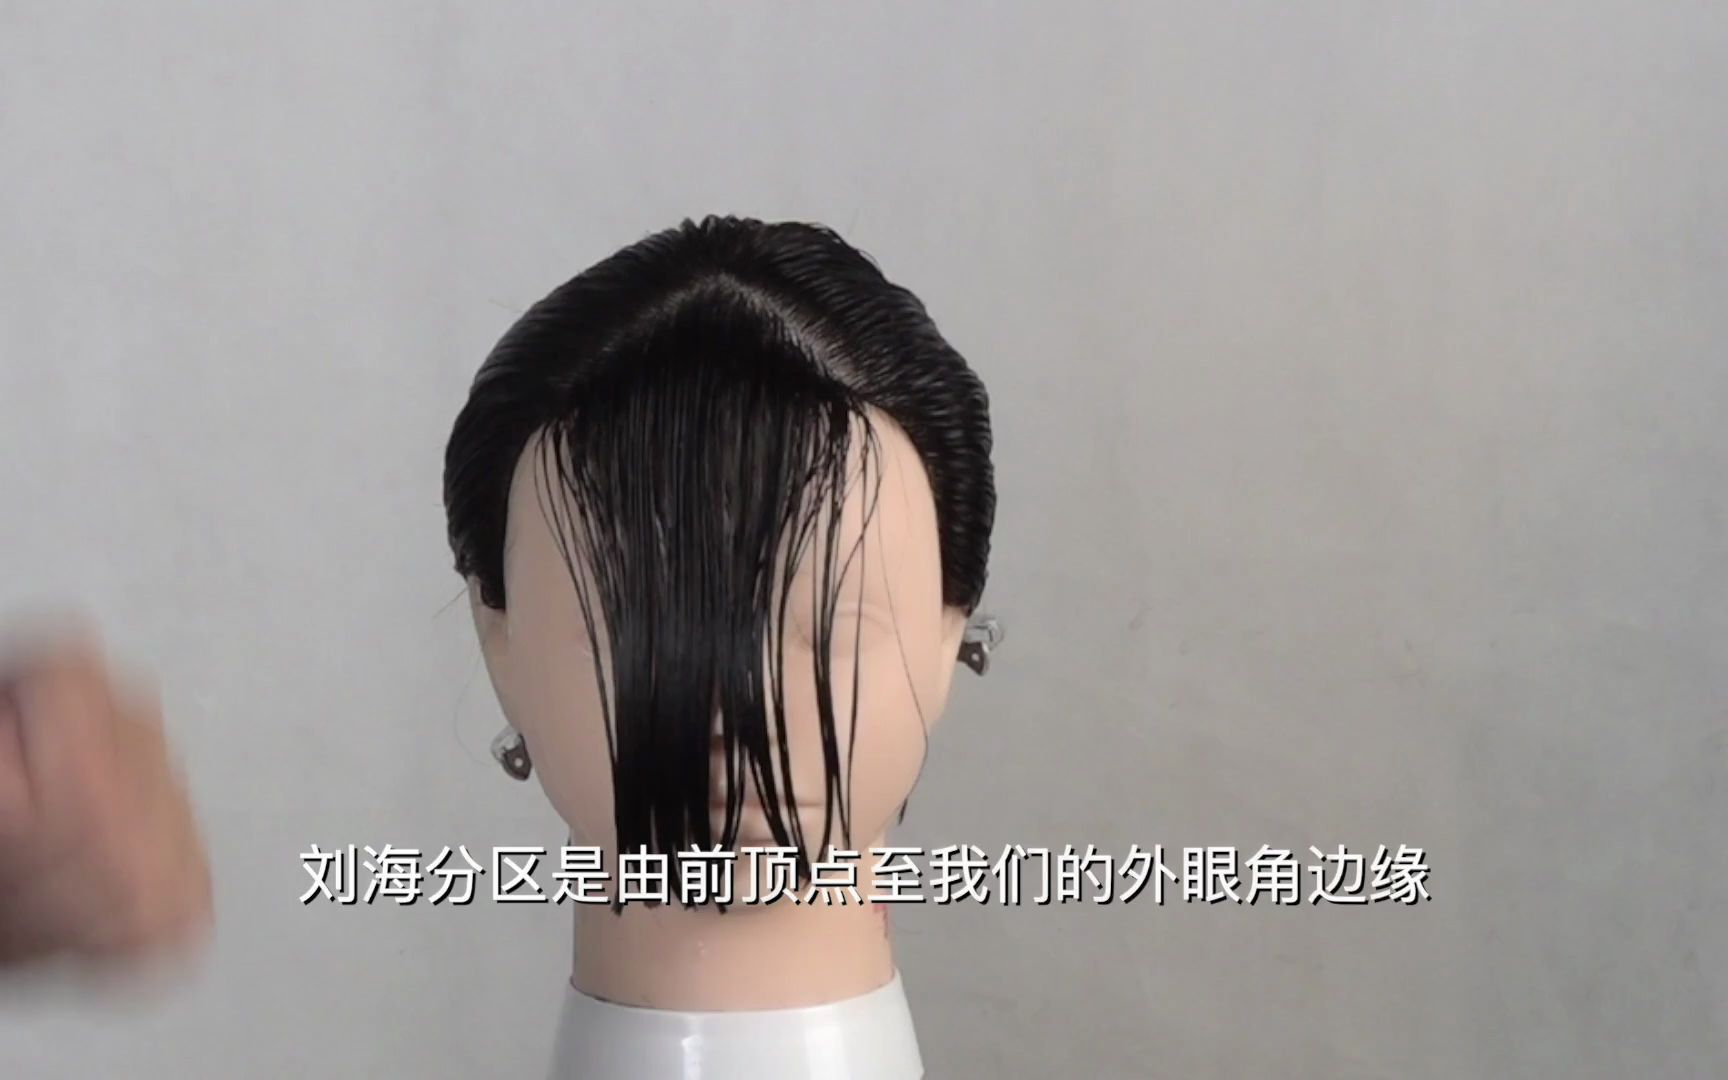 三款刘海剪发视频托尼盖不同脸型设计海蒂老师剪刘海教程